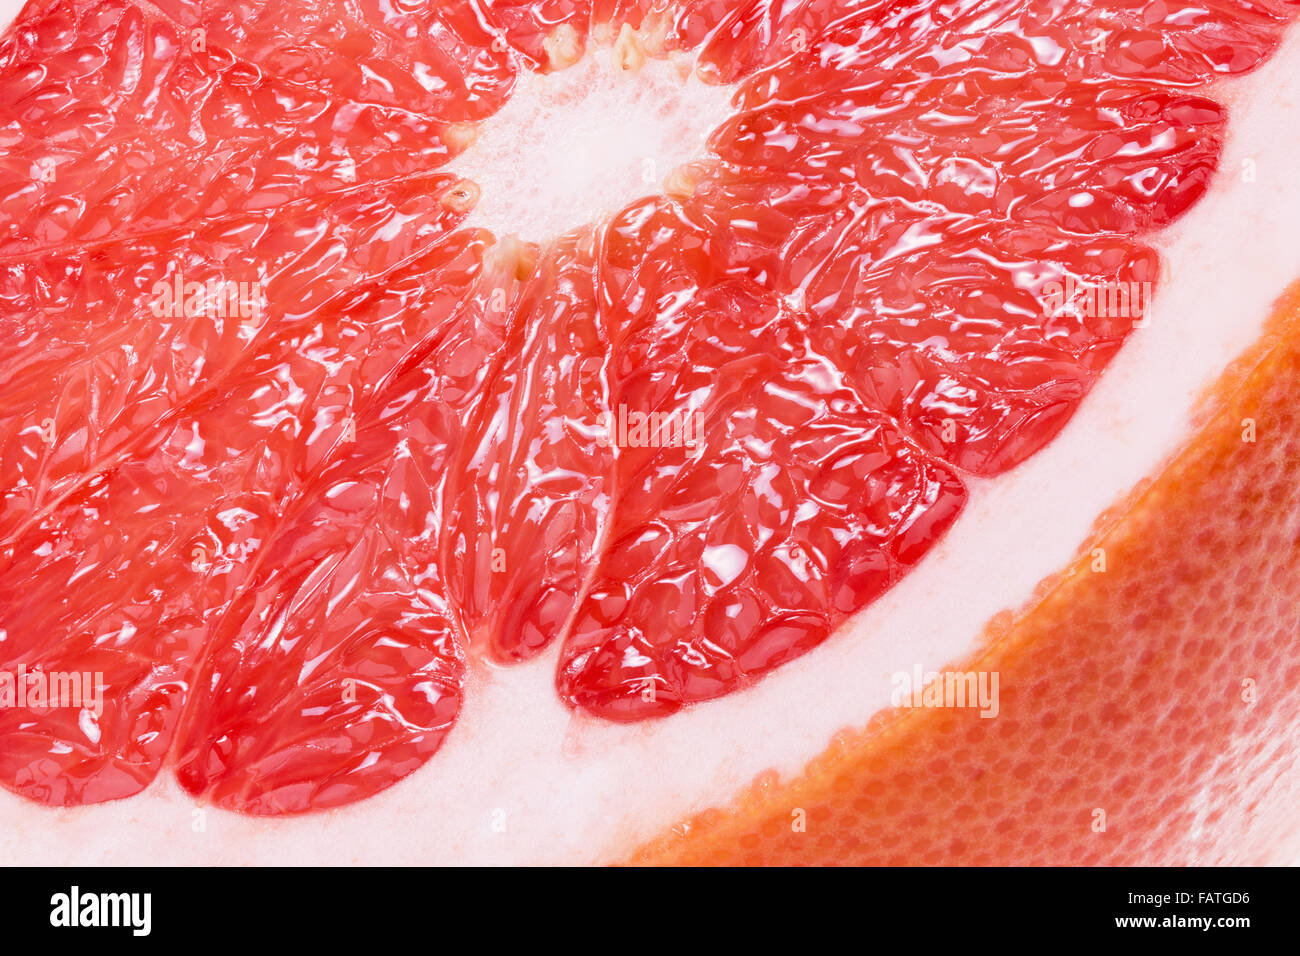 close up of juicy grapefruit. Stock Photo